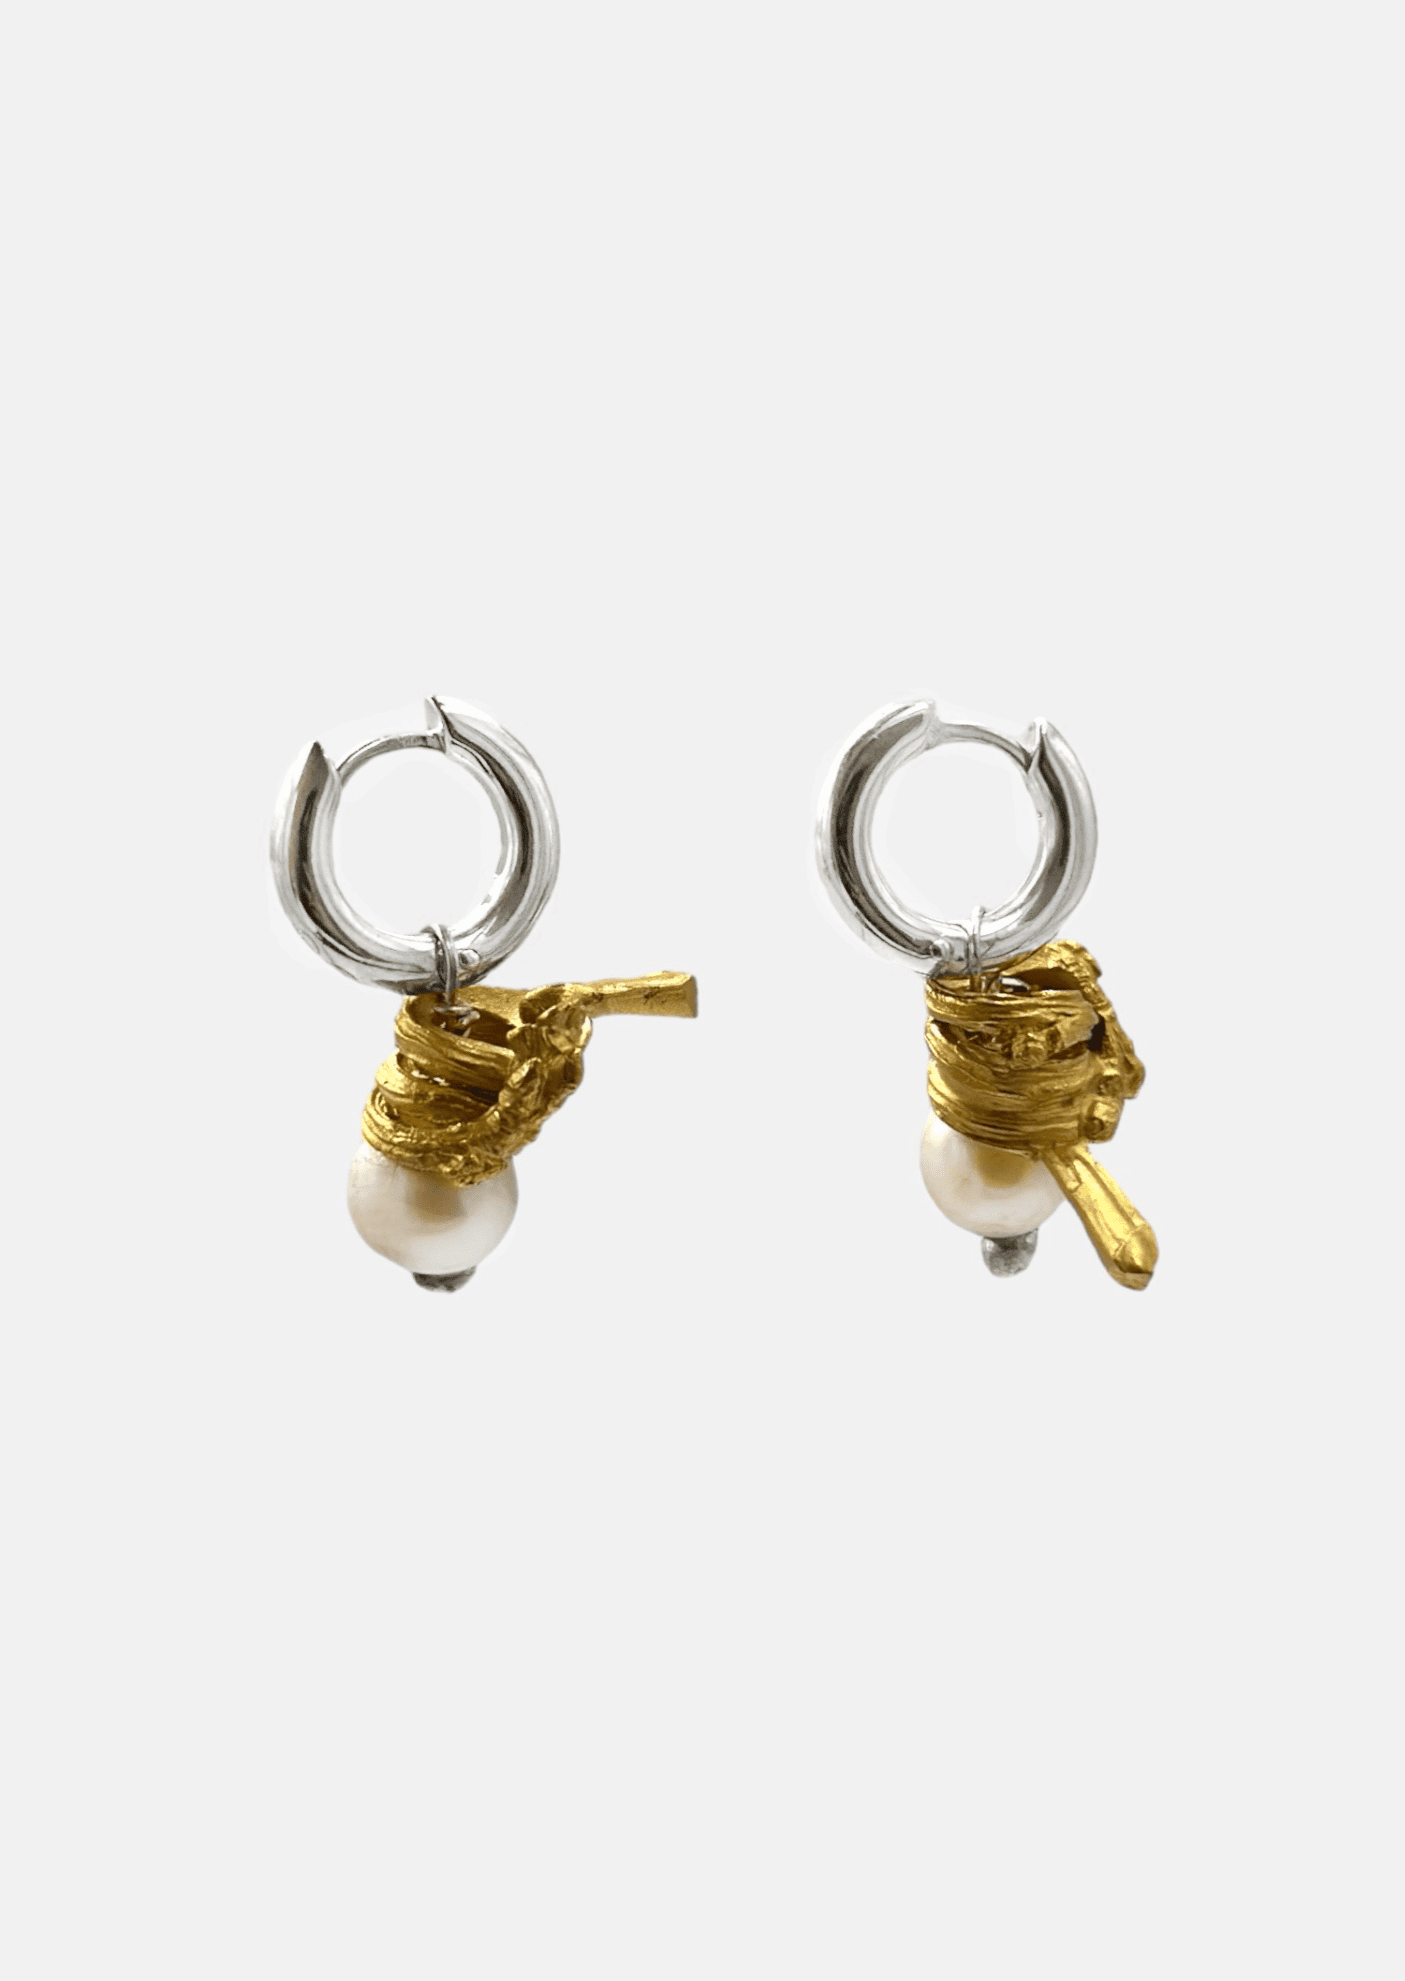 Boucle d'oreille - "Les mini coraux" - Petites créoles, perles d'eau douce et éléments plaqués or